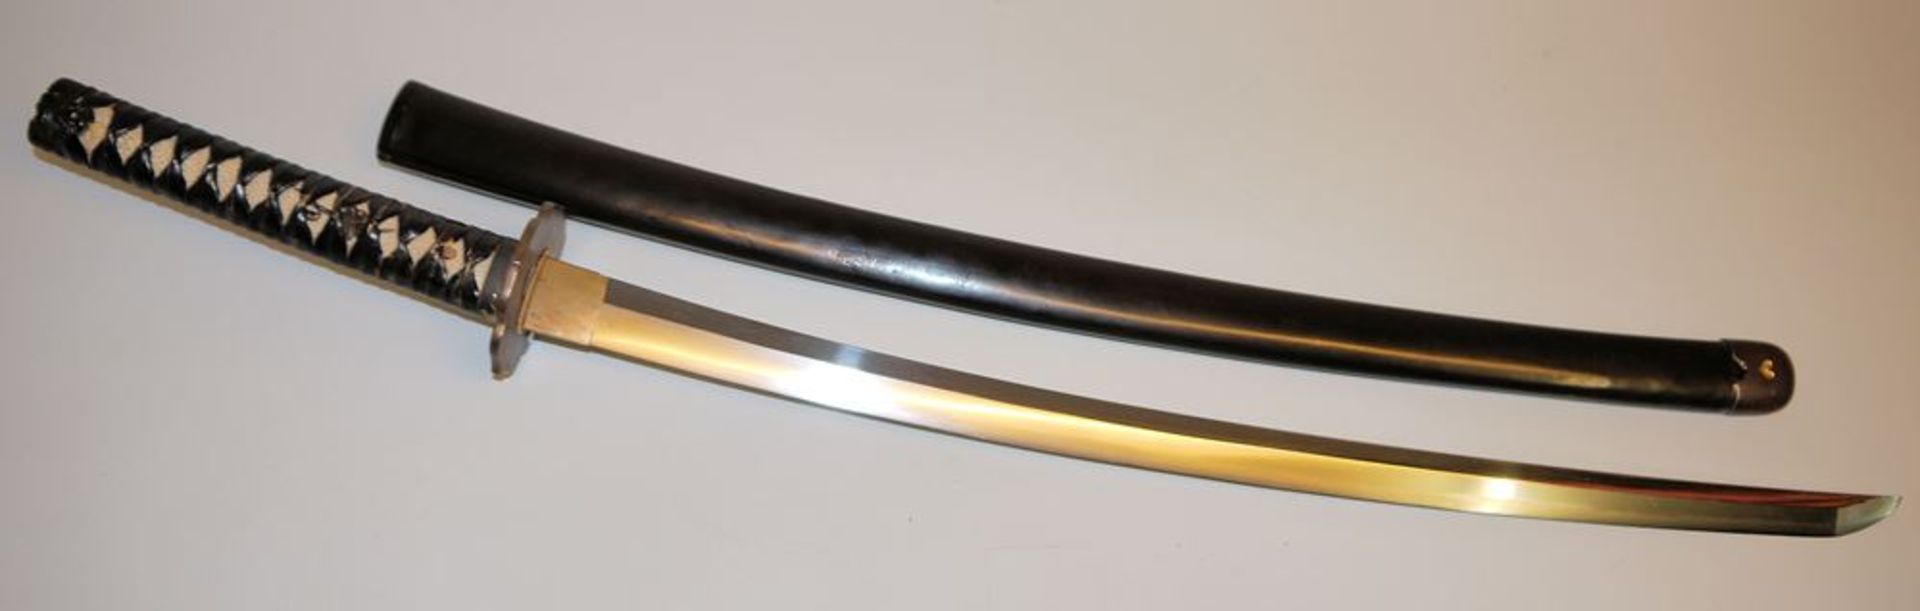 Katana, japanisches Schwert der Edo-Meiji-Zeit